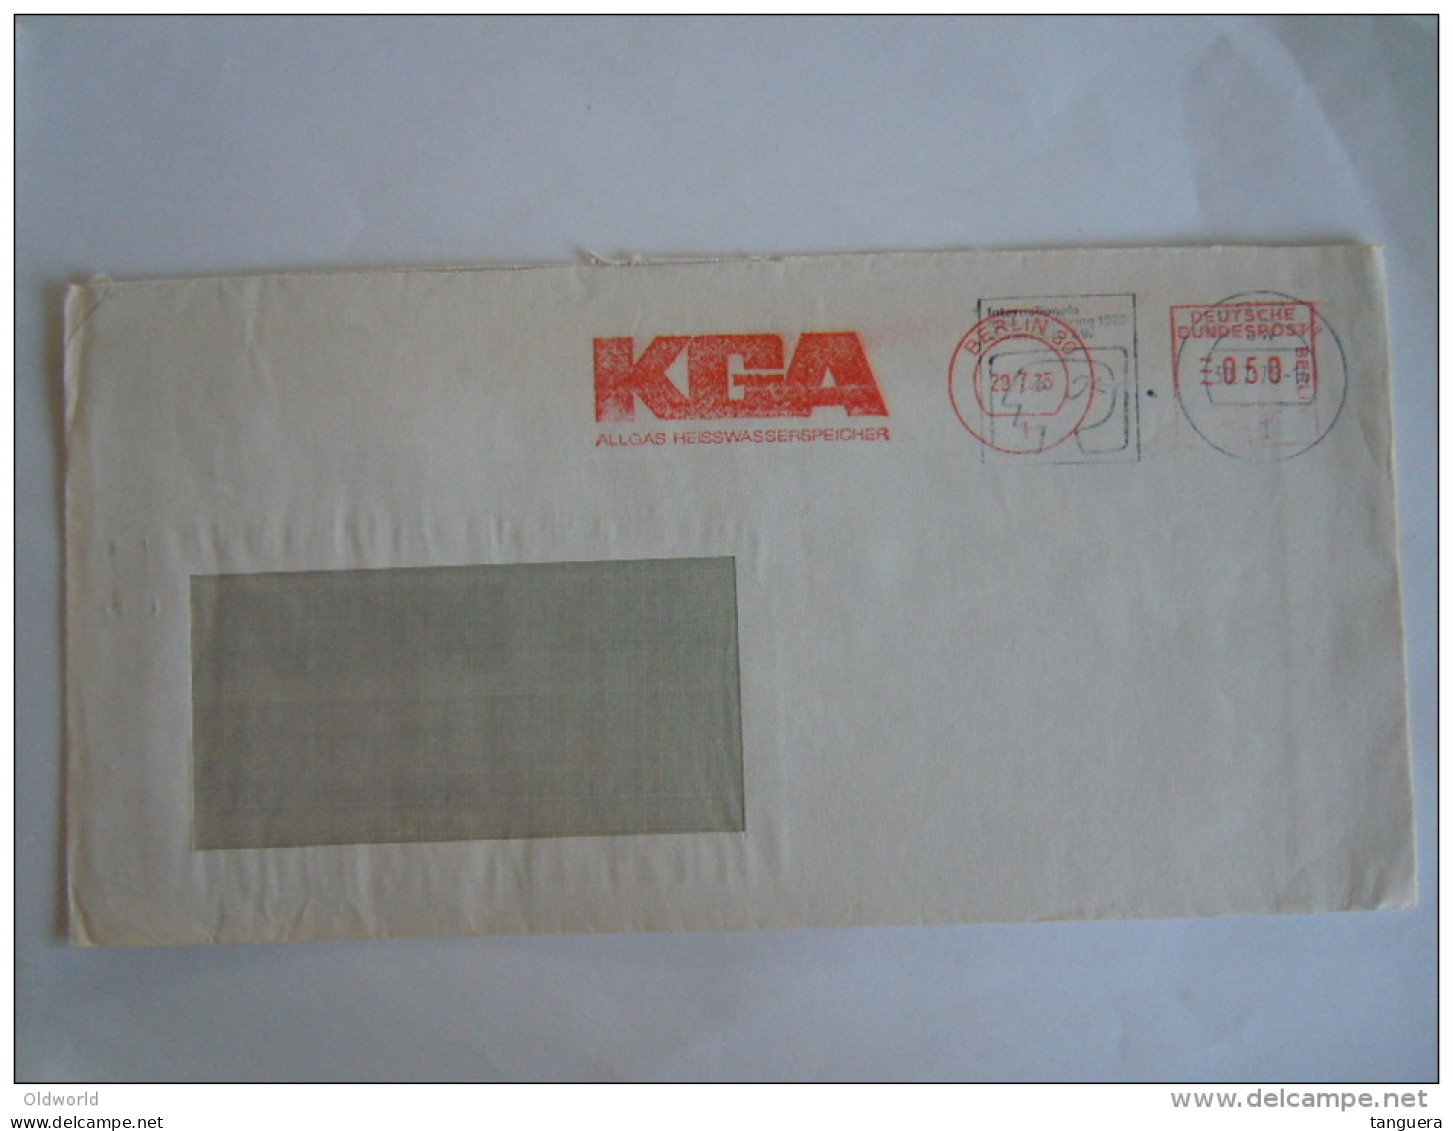 Germany Allemagne Brief Lettre Letter EMA 1975 KGA Allgas Heisswasserspeicher Rare 2 Cachets Superposés Berlin - Machines à Affranchir (EMA)